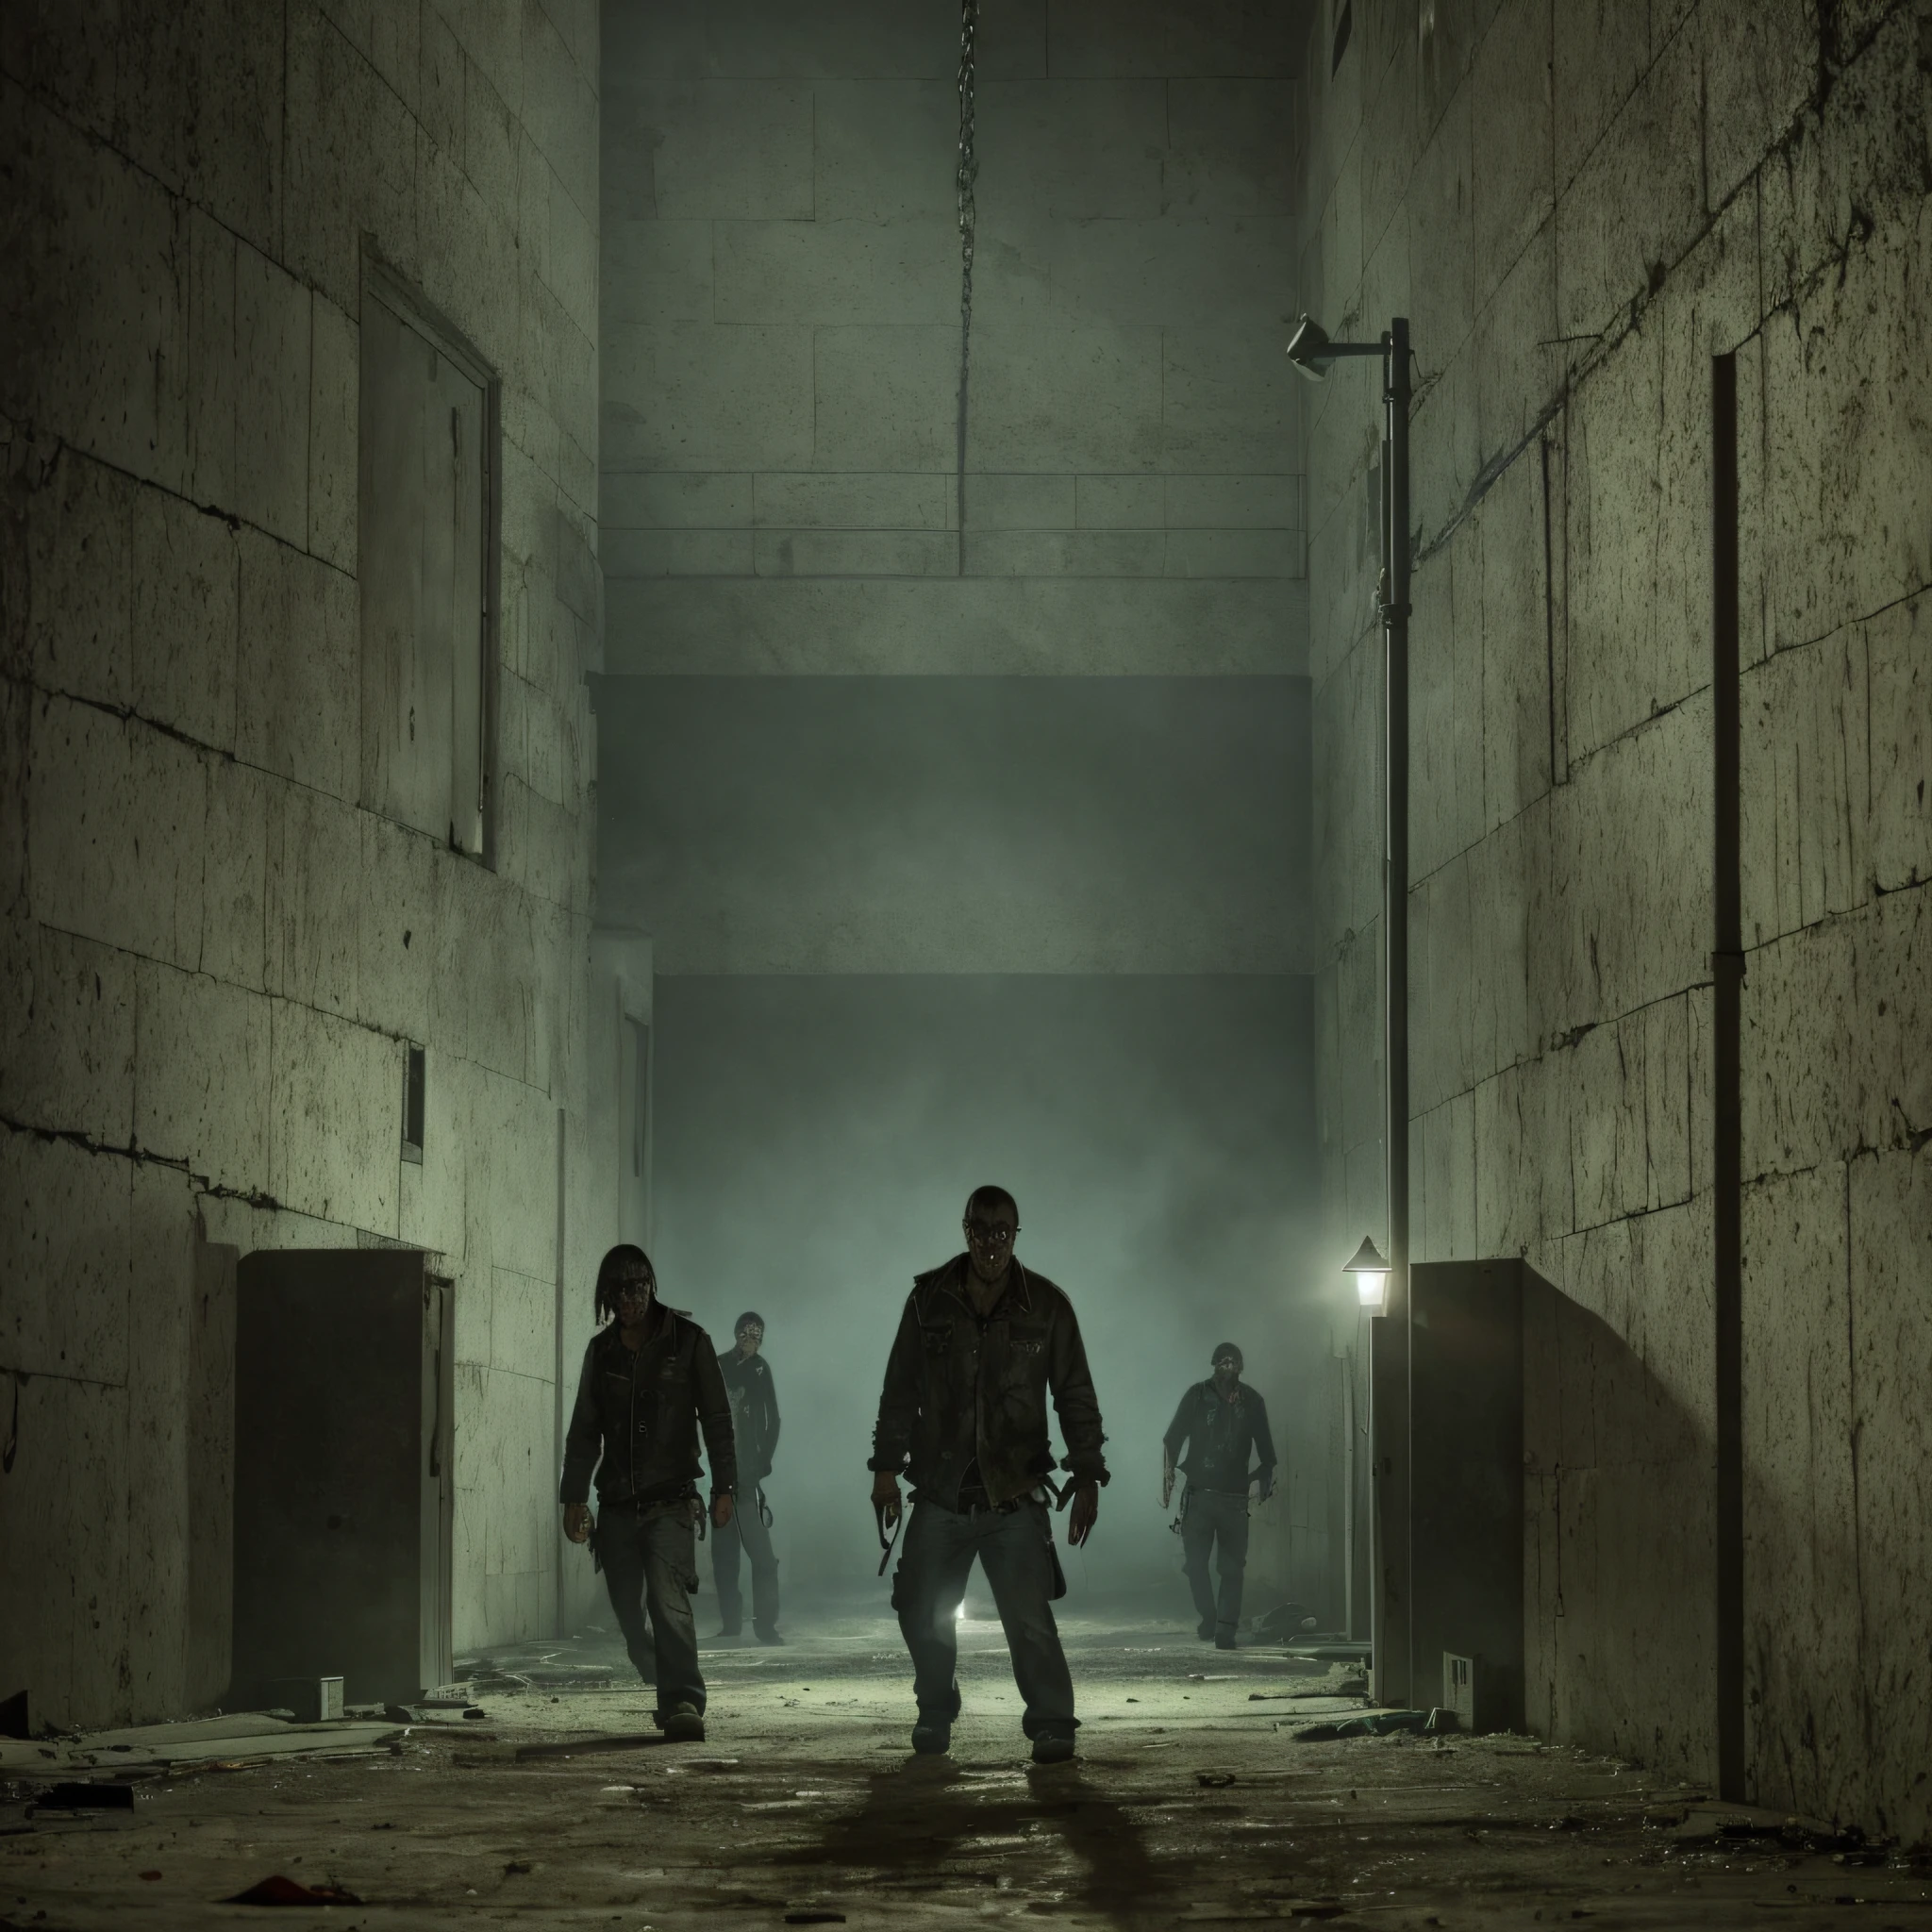 Portada de película de miedo con zombis alrededor de una prisión rodeada por la noche con una luz dentro de la prisión encendida